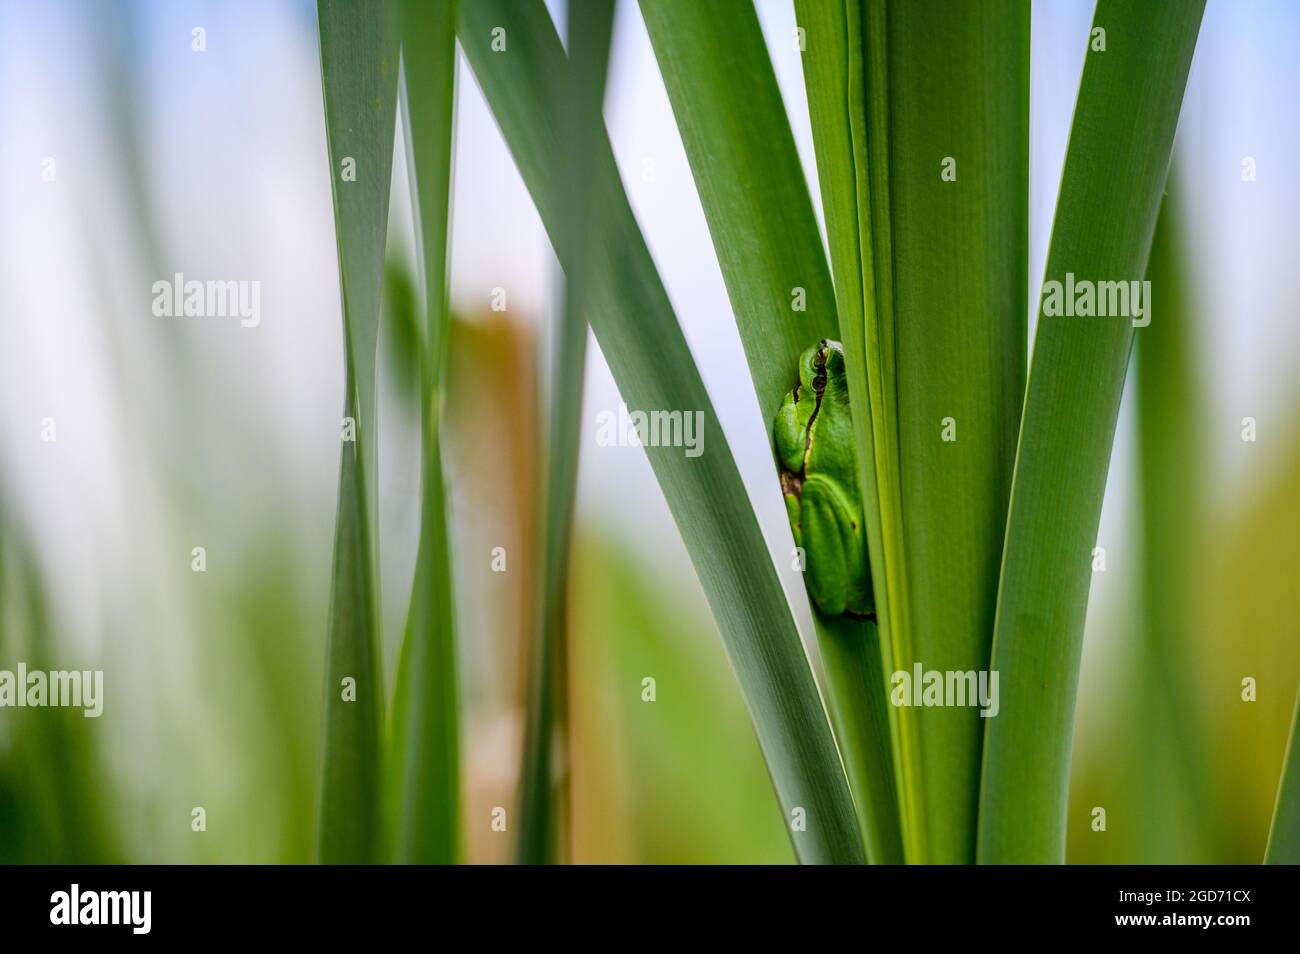 La rana europea (Hyla arborea) seduta tra le foglie di una lattaglia verde. Bella rana verde, rara, nel suo habitat naturale. Foto Stock